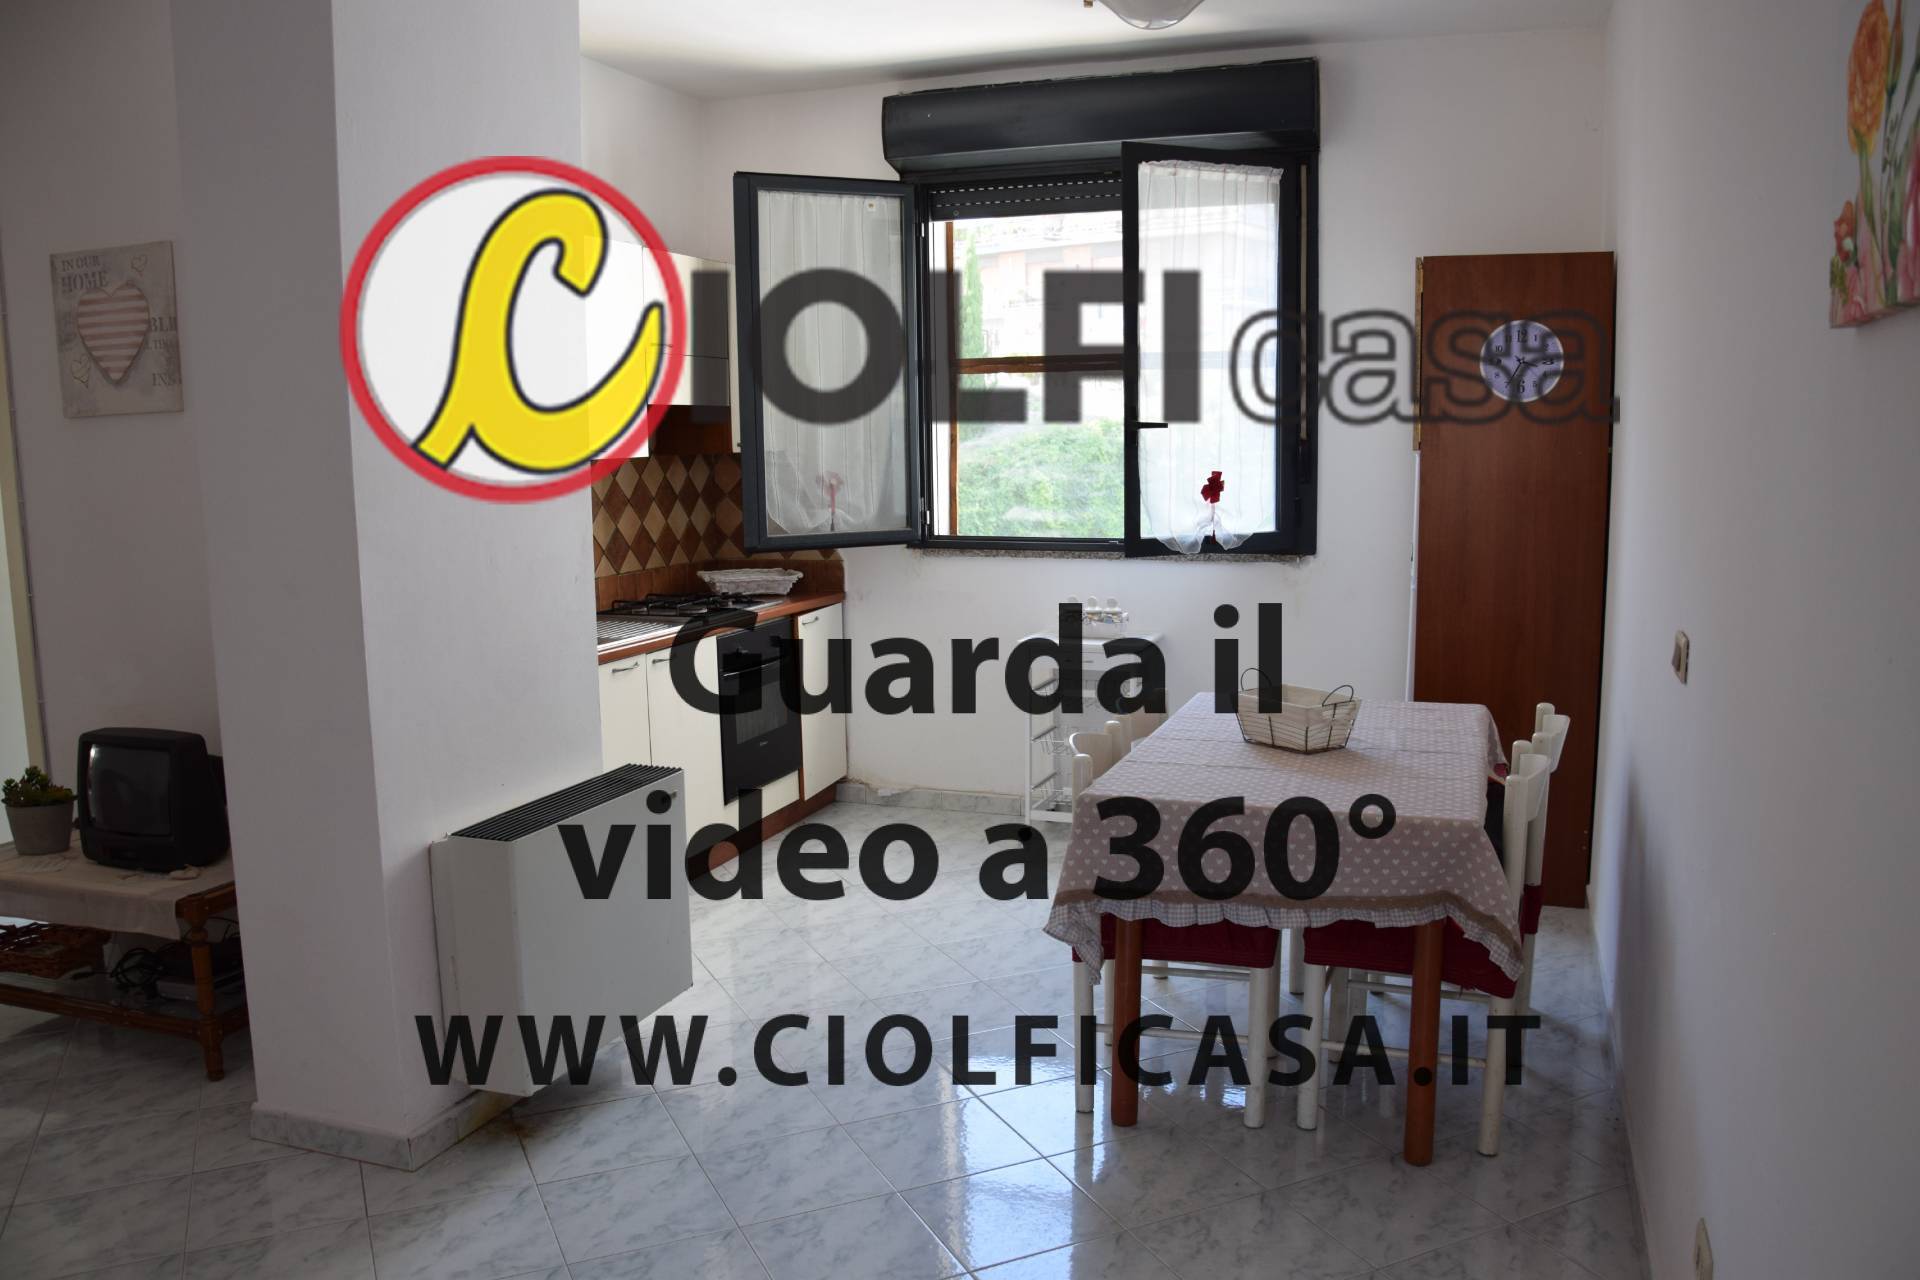 Appartamento in affitto a Cassino, 3 locali, zona Località: Stazioneferroviaria, prezzo € 390 | CambioCasa.it